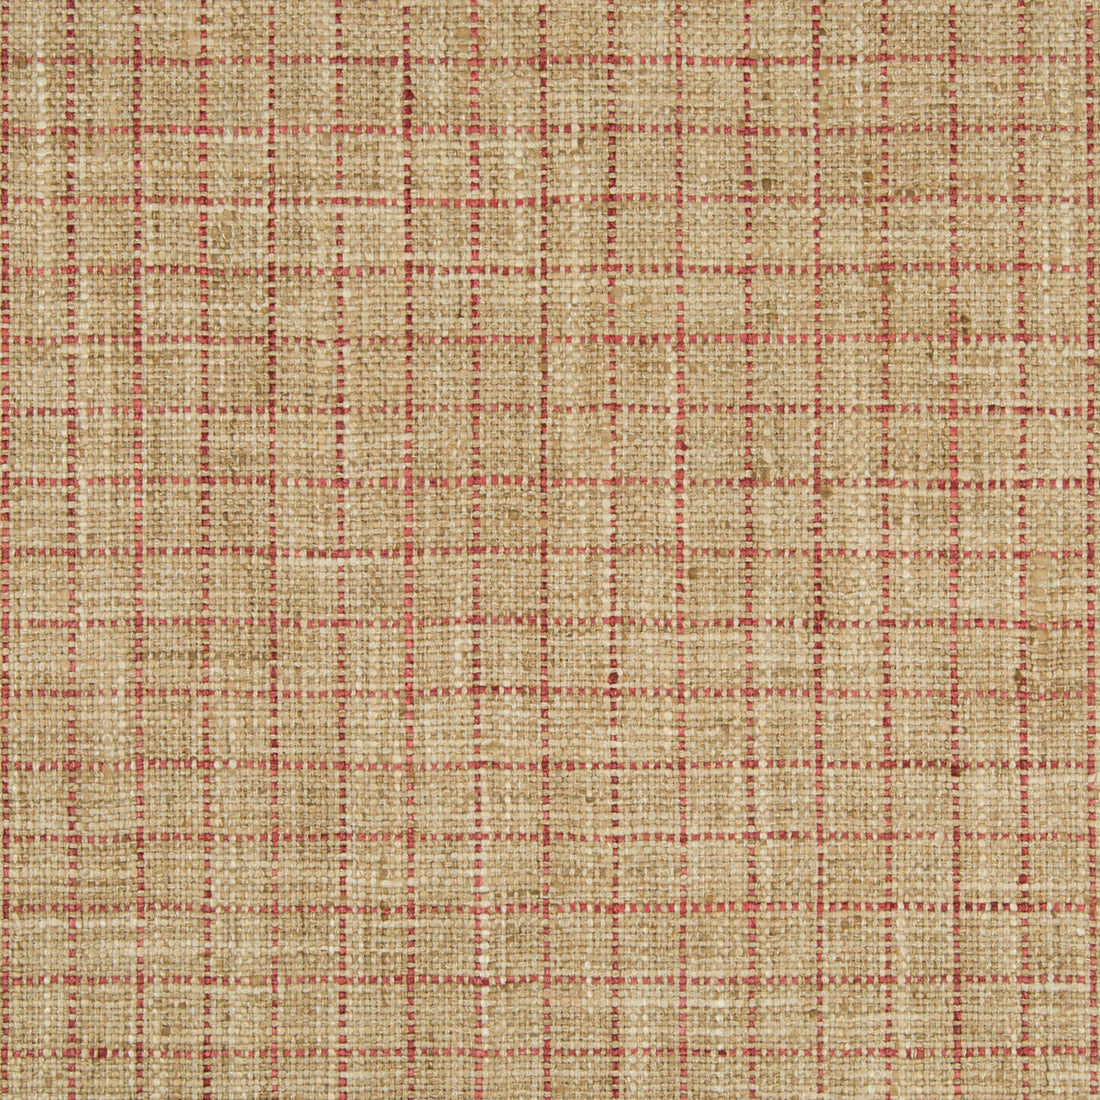 Kravet Basics fabric in 34986-916 color - pattern 34986.916.0 - by Kravet Basics